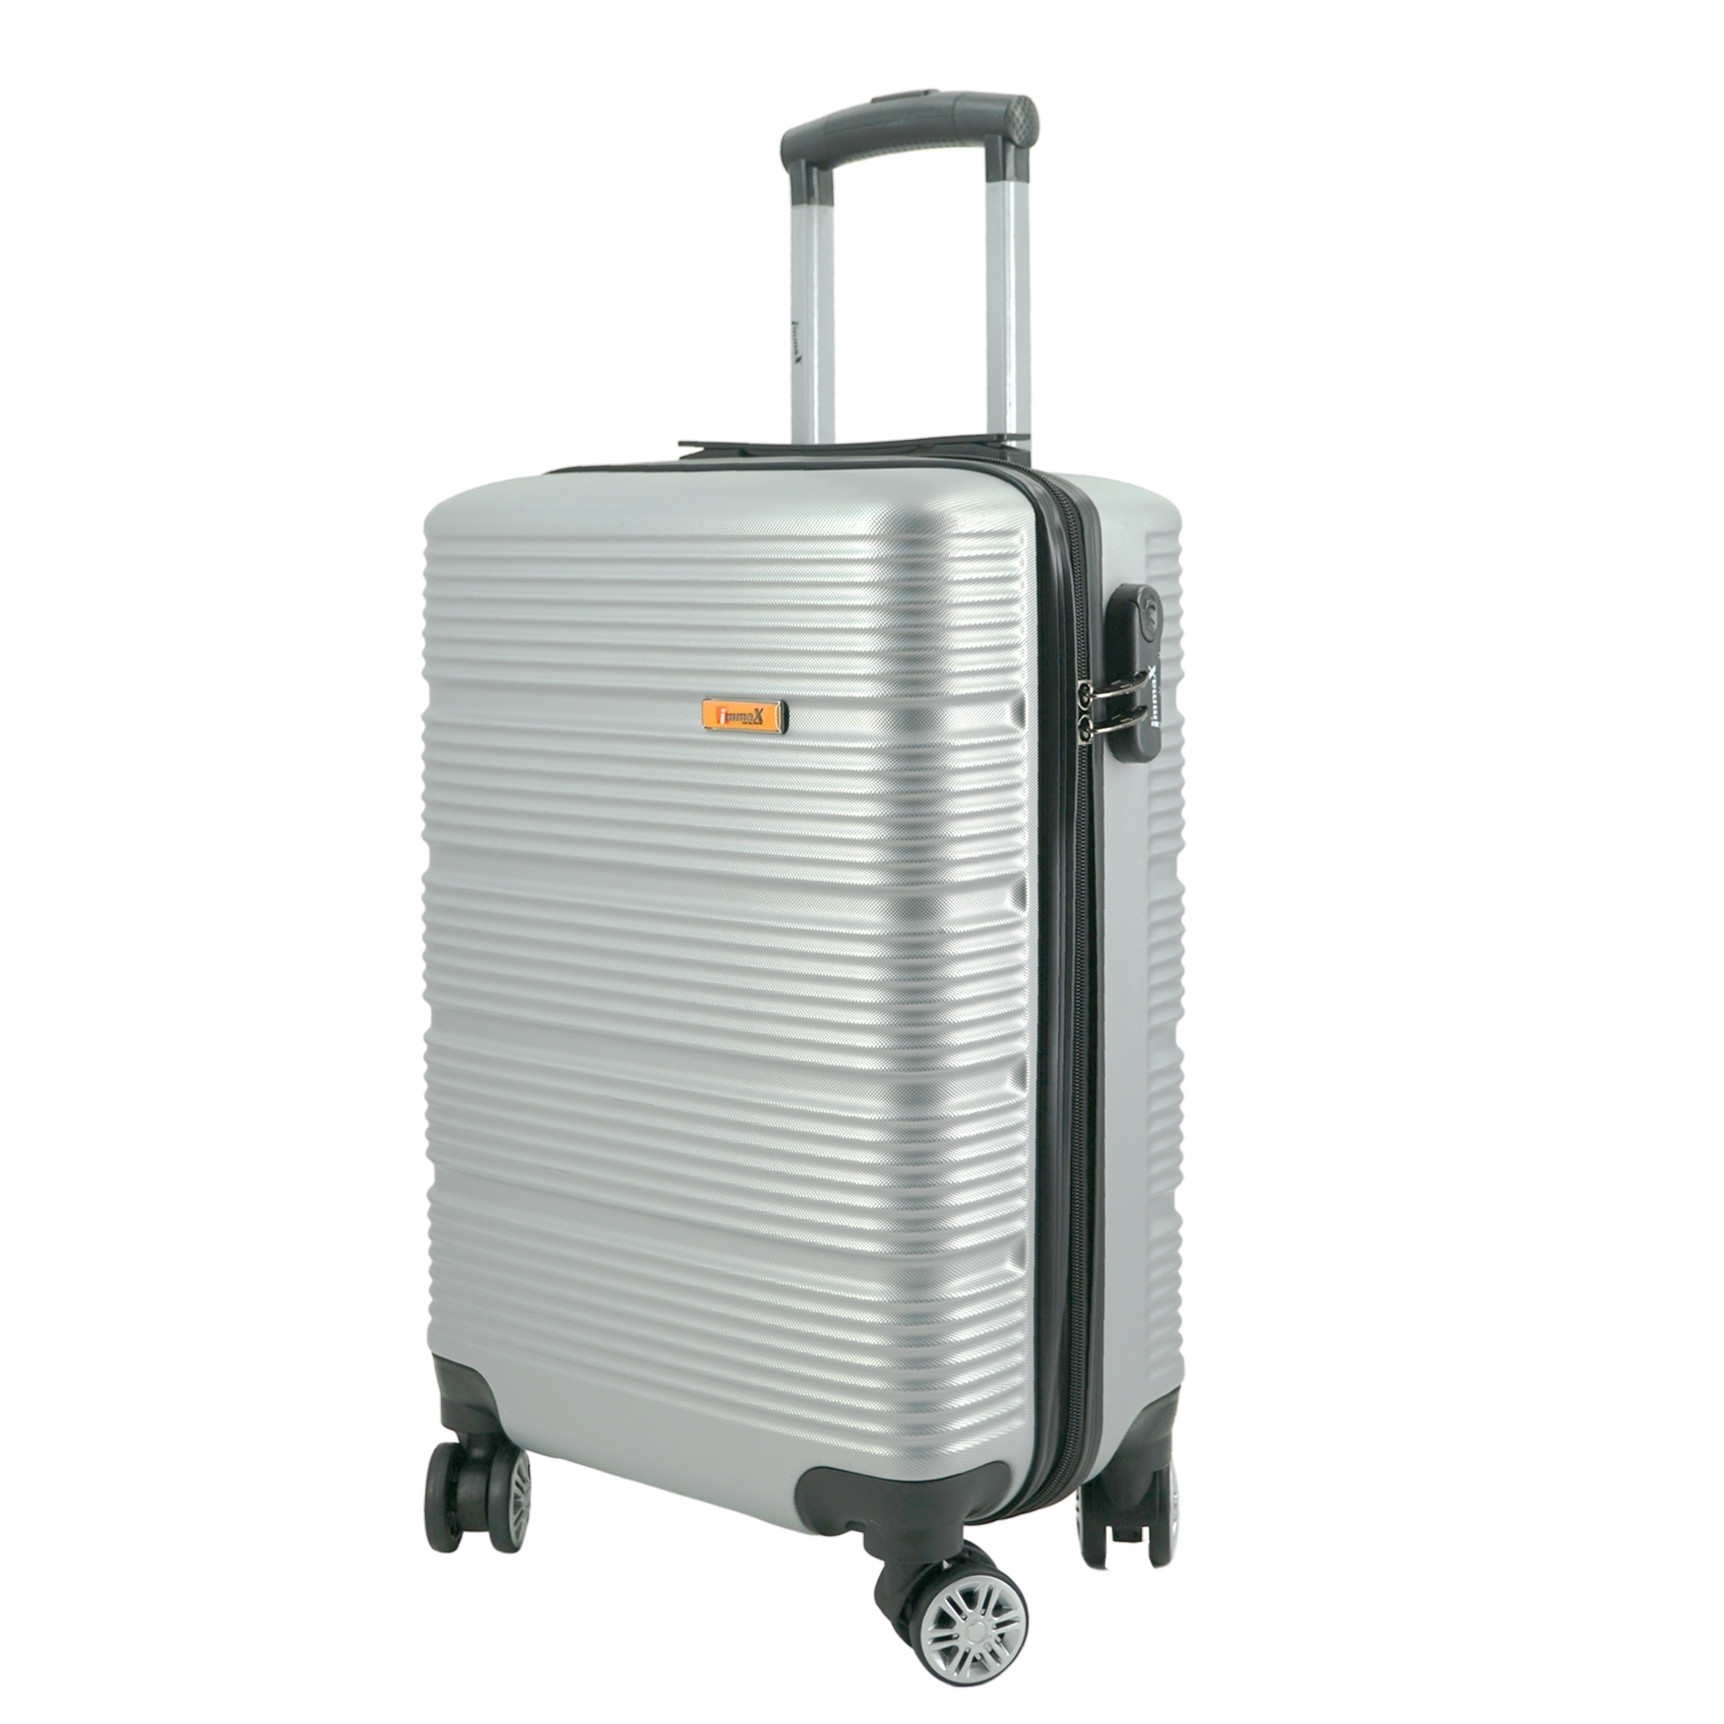 Vali kéo i'mmaX X13 size 24inch ký gửi hành lý nhựa PC/ABS - Bảo hành 3 năm